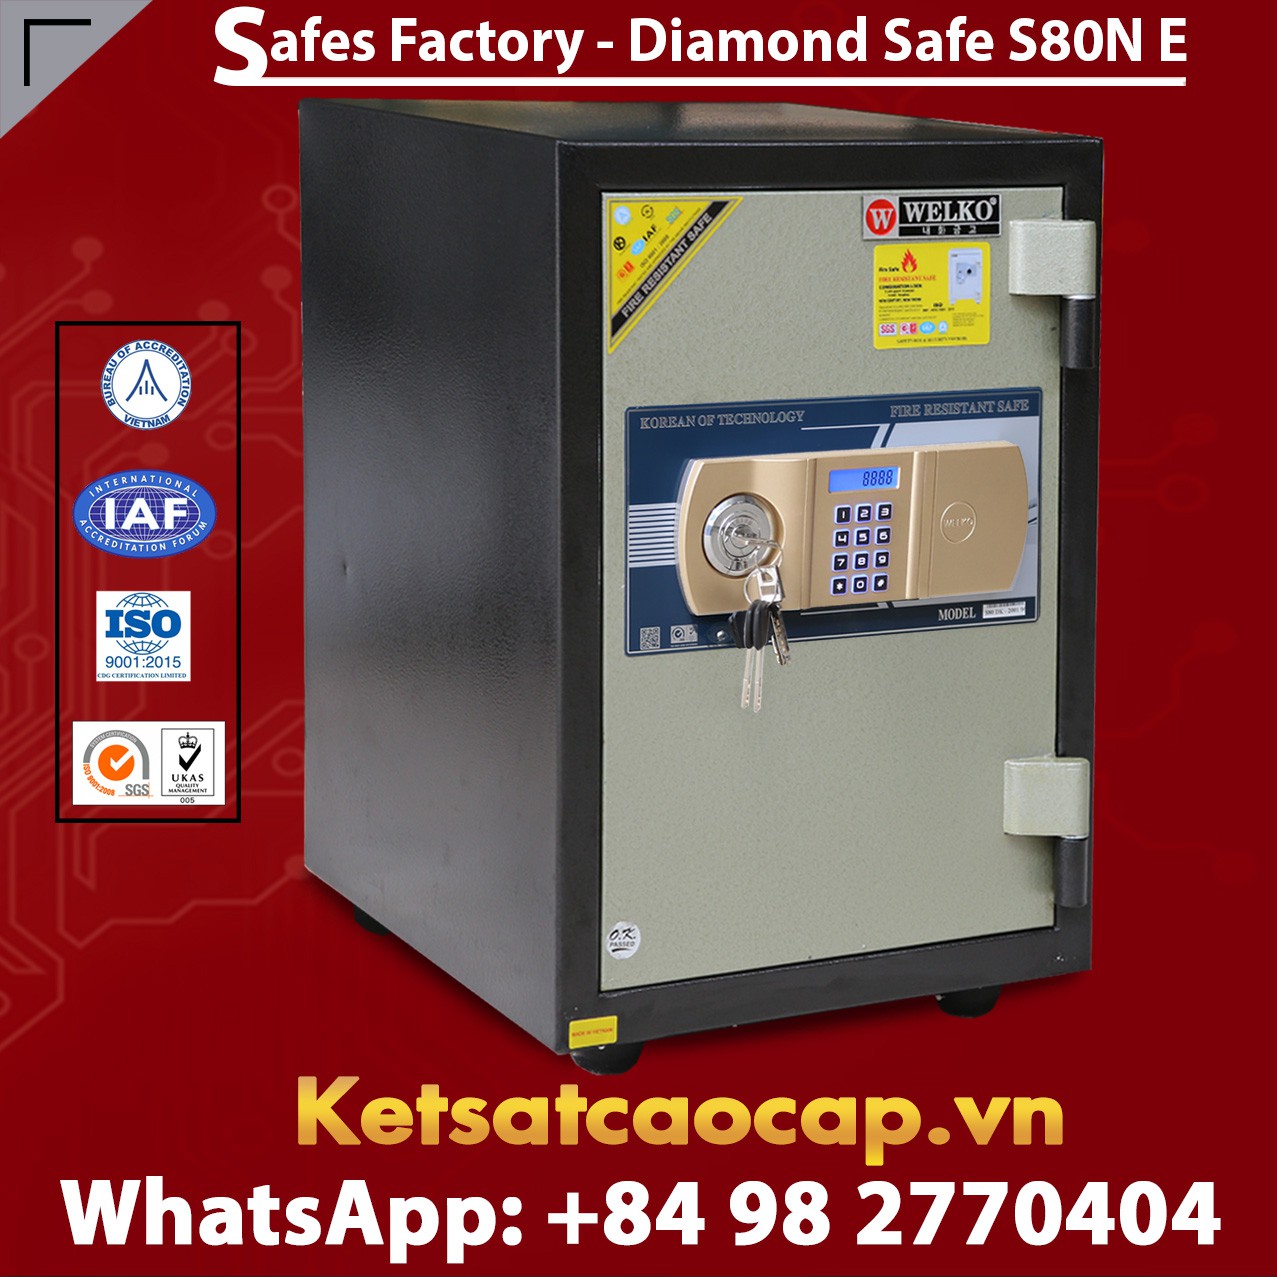 Safes Factory manufacturer